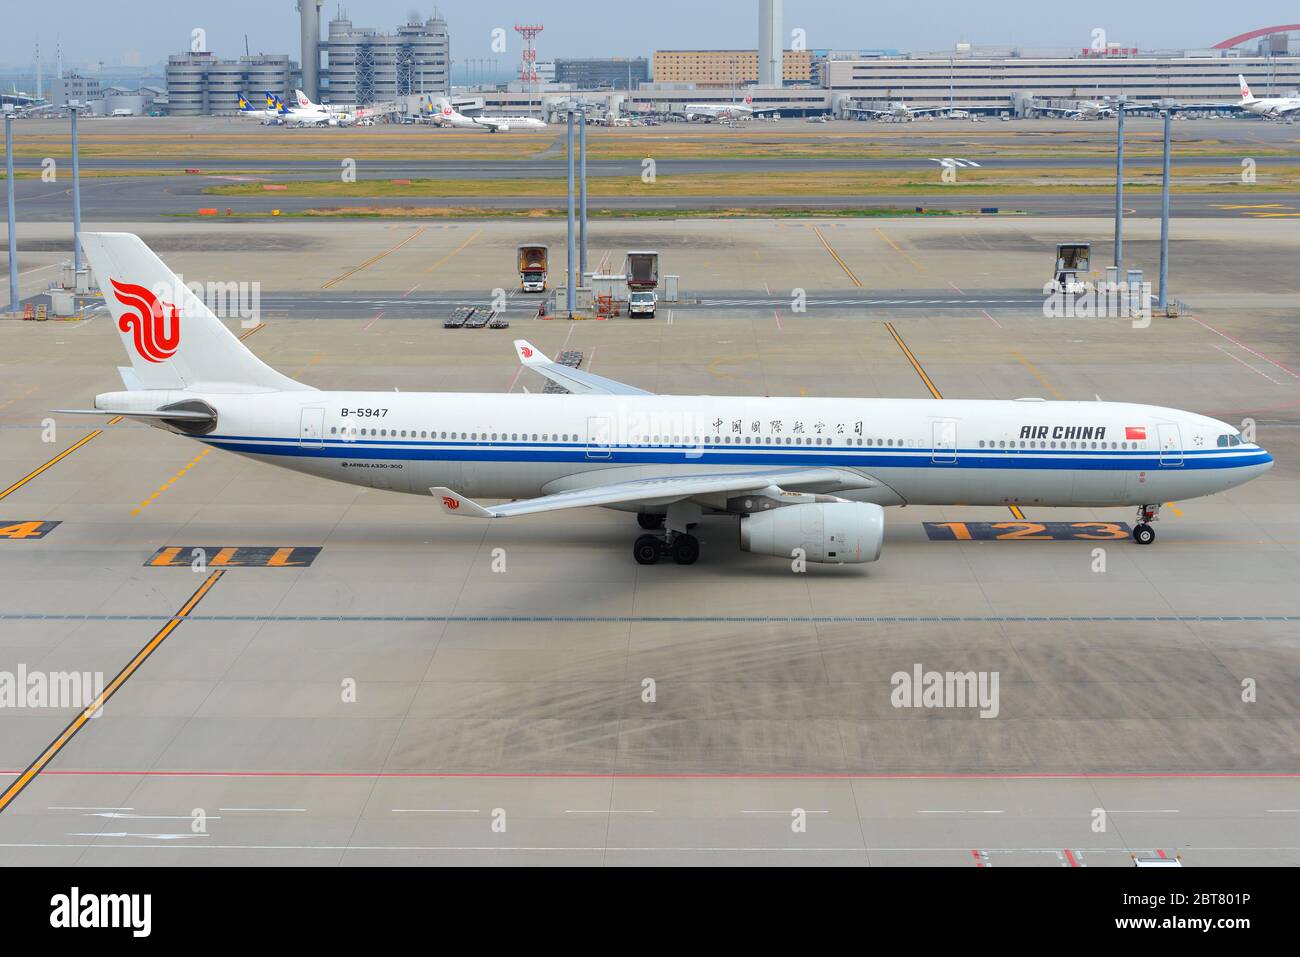 Air China airplane Airbus A330-300 taxiing at Haneda Airport Tokyo Japan. B-5947 A330 aircraft. Stock Photo